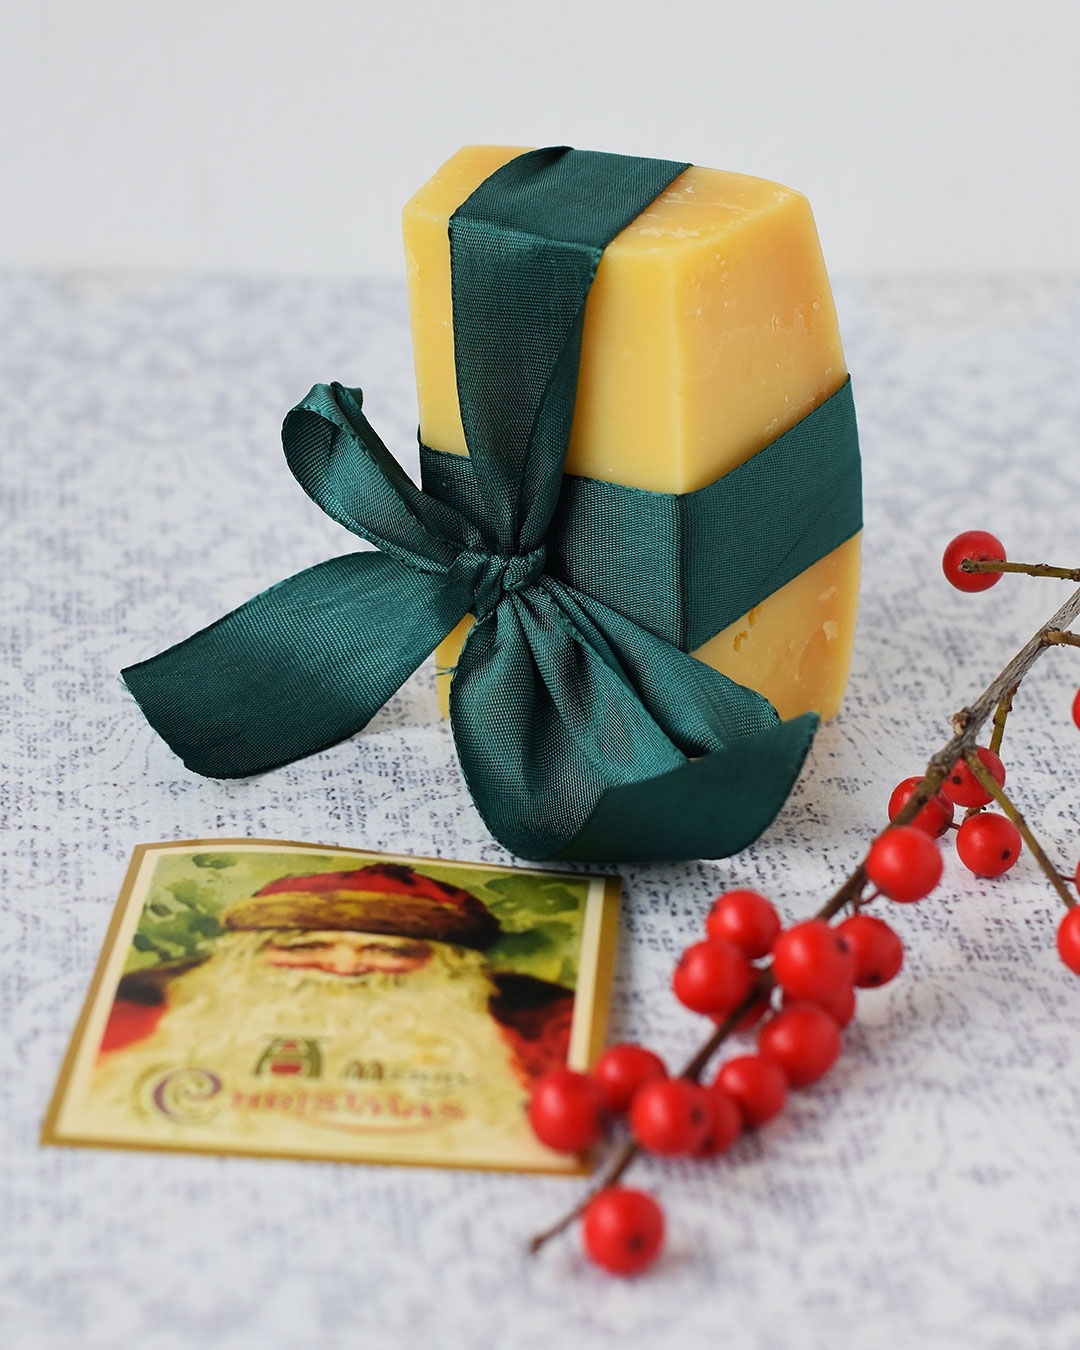 ER ALLE JULEGAVER I HUS? 🎁🧀🎁⁠
Eller mangler du stadig nogle? Og hvad stiller man op til kvinden/manden, der har alt? (og som elsker ost) 🧀⁠
⁠
Her er fire gode bud på gaver, du stadig kan nå inden juleaften:⁠
⁠
🎁⁠
1. Ost fra ostehandleren. ⁠
Enten giver du en kasse med velvalgte oste fra din lokale ostehandler - eller også bestiller du en kasse hos fx @osteposten til levering hos modtageren efter juleaften.⁠
⁠
🎁⁠
2. En virtuel osteoplevelse.⁠
Hvad er bedre end at nyde ost sammen? Giv et gavekort til min virtuelle ostesmagning den 21/1 - og snup også en plads til dig selv, så kan I opleve det sammen - og helt coronasikkert hver for sig. Ostene sendes lige til døren. Find link i bio.⁠
⁠
🎁⁠
3. Ostegrej⁠
Man går aldrig galt i byen med flot og brugbart grej. Et lækkert bræt eller en skarp ostekniv. Køkkenbutikker, ostebutikker, små butikker med tøj og indretning - du kan finde ting til at servere ost med/på mange steder.⁠
⁠
🎁⁠
4. Invitér på osteaften⁠
Find en dato, lav et flot kort og køb en lille, lækker ost til at lægge under juletræet. Så er rammerne for en hyggelig osteaften på plads, som du kan stå for på en af vinterens mange, mørke aftener. ⁠
⁠
🎁⁠
Har du flere gode idéer til ostegaver, du stadig kan nå inden juleaften? Så del dem endelig og hjælp andre.⁠
⁠
God fornøjelse!⁠
.⁠
.⁠
.⁠
⁠
#ostesnak #cheesetalks #cheese #cheeseislife #cheeselovers #cheeseplease #ost #cheeseblogger #foodie #instacheese #fromage #cheeseblog ⁠
#foodstylist #cheesephoto #cheesephotography ⁠
#onmytable #onmyplate #cheeseplate #cheeseplatter #cheesetasting #ostebord #ostebræt #cheeseboard ⁠
#ostesmagning #julegave #jul #juleinspiration #ostegave